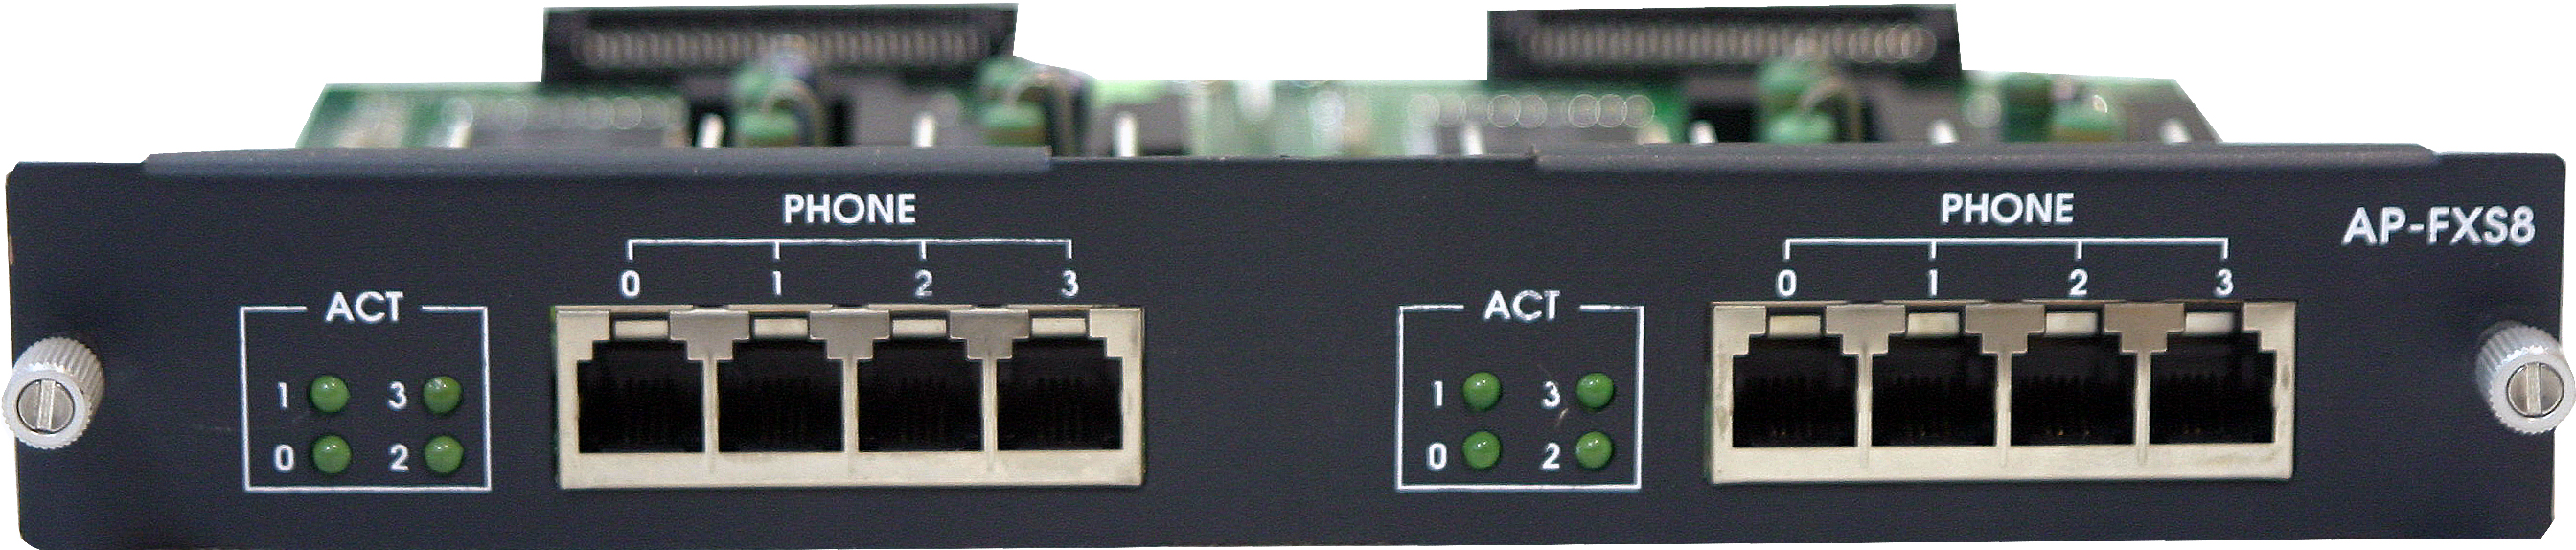 AddPac	ADD-AP-FXS8  - (For AP2120/AP2640/AP2650), модуль